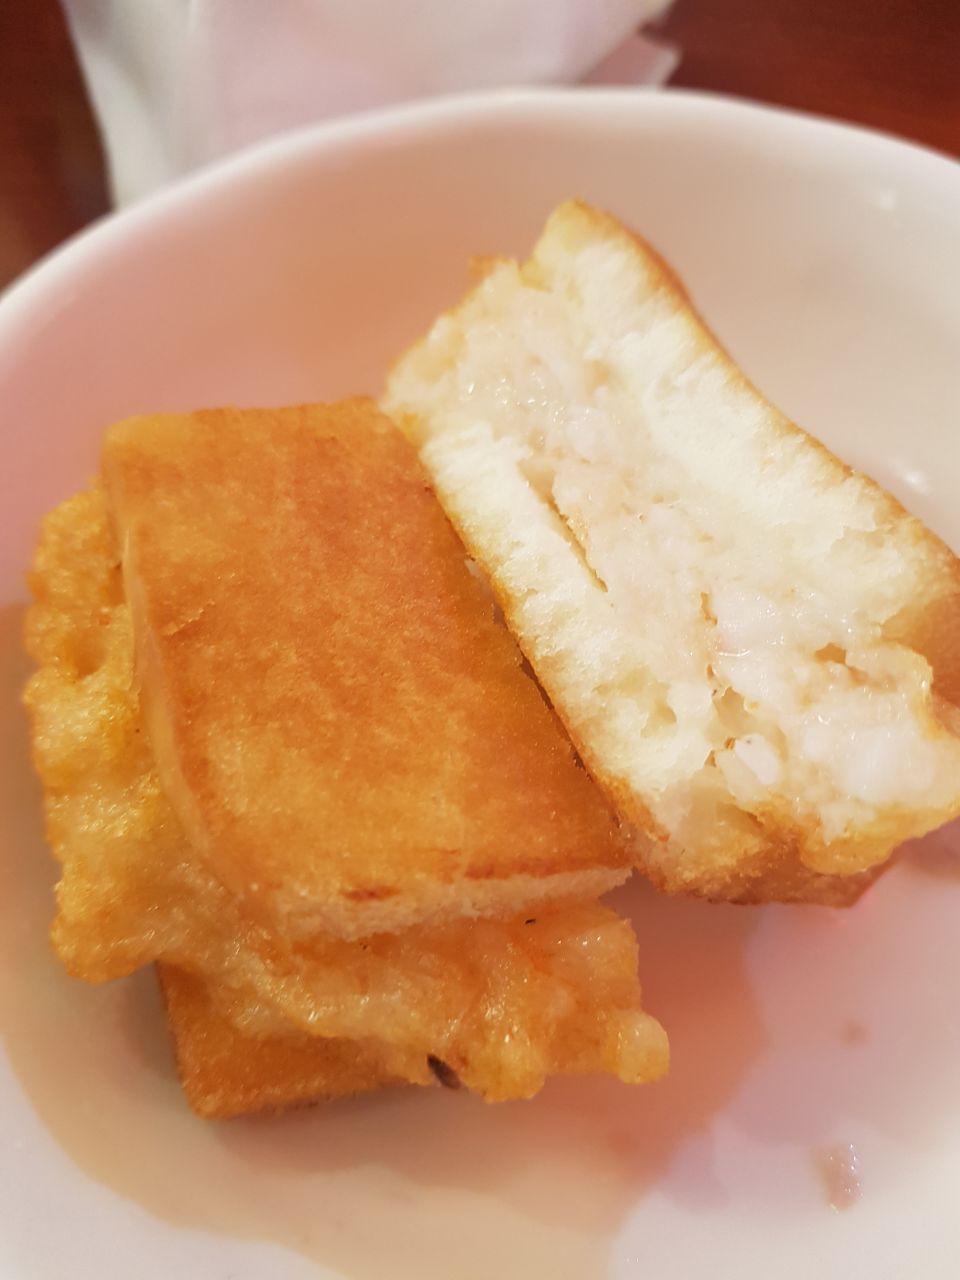 인천 차이나타운 맛집 하얀짜장 멘보샤 샤오롱바오 중국냉면 연경